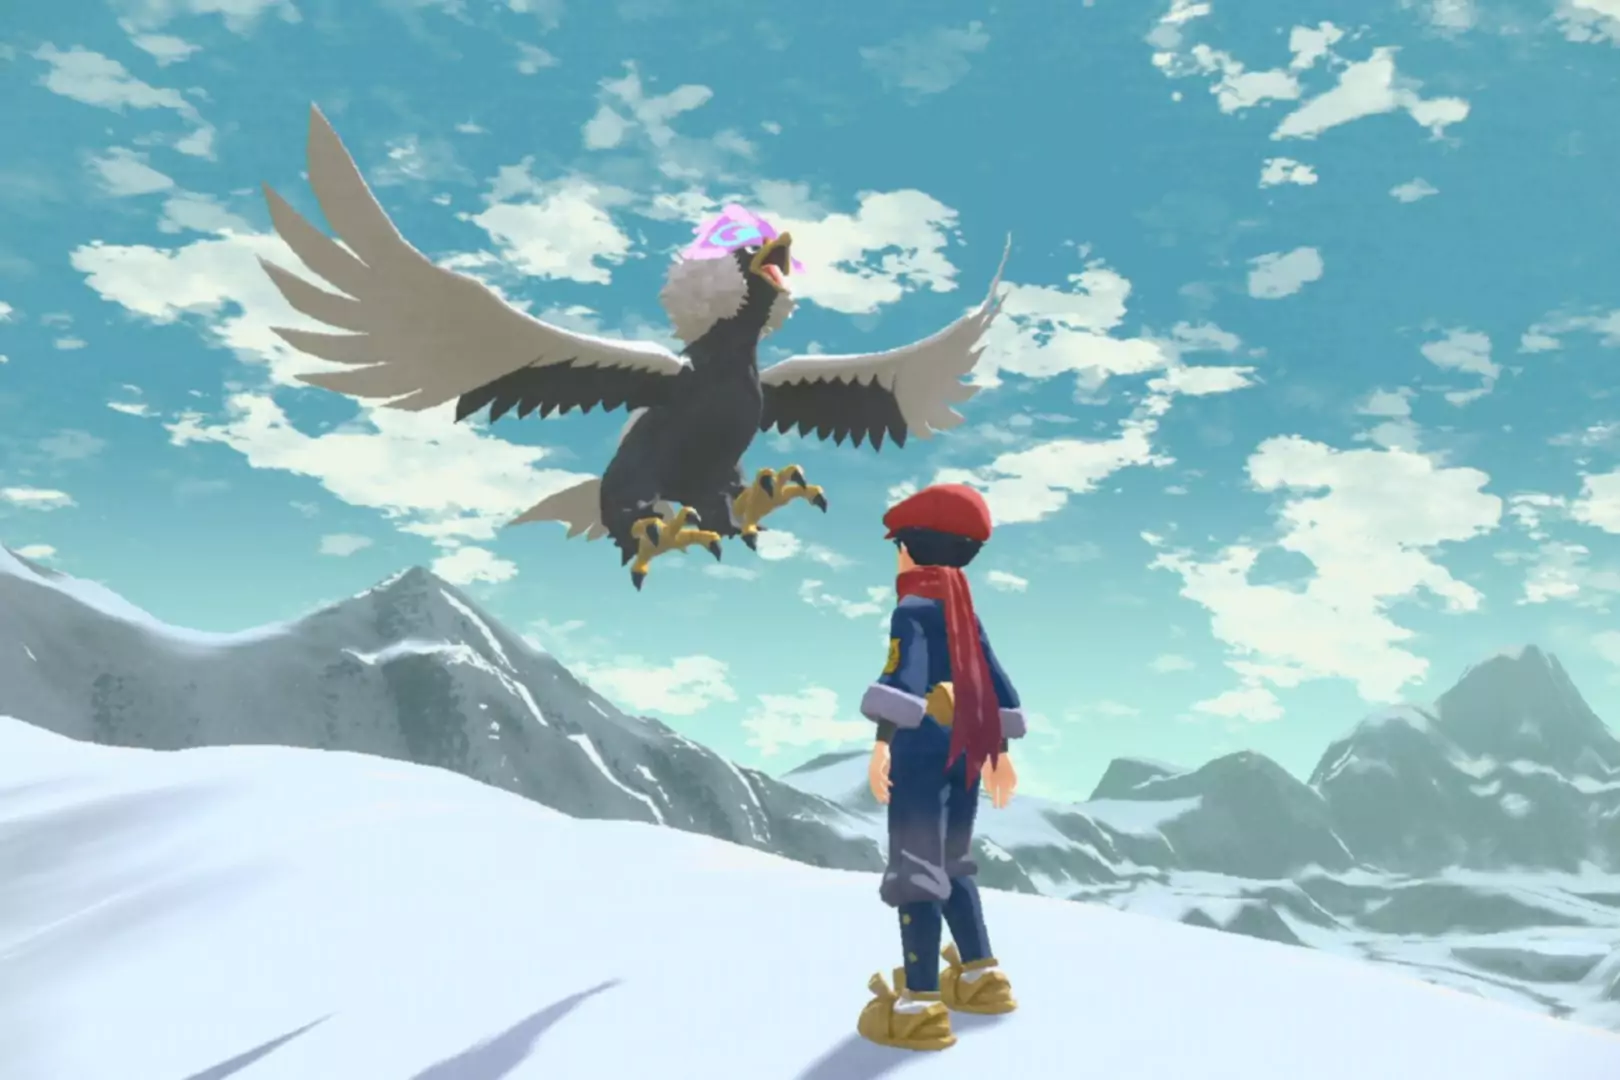 Capture d'écran de Pokemon Legends Arceus montrant un personnage regardant un Pokemon volant sur une montagne enneigée.